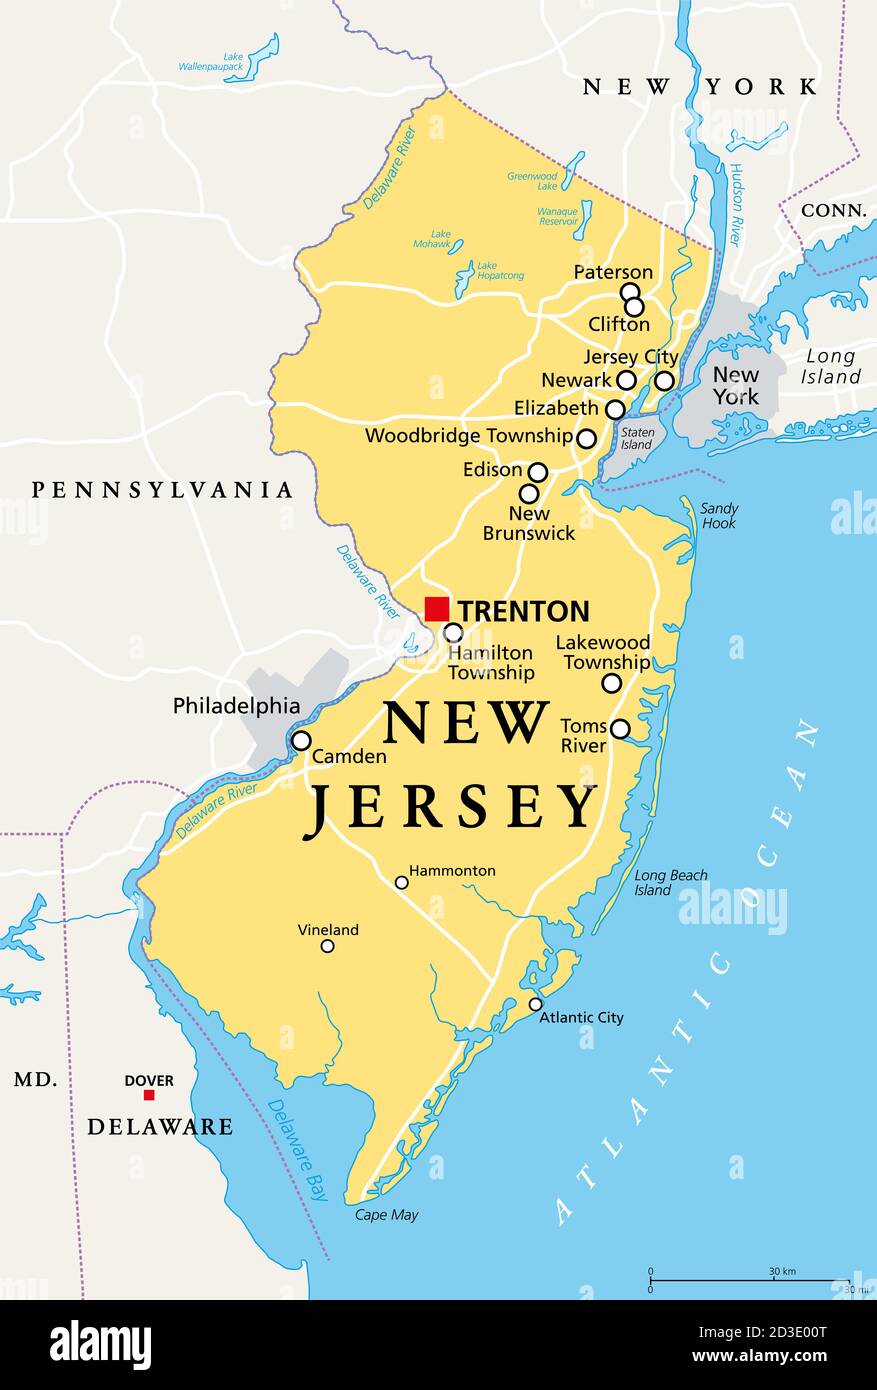 New Jersey, NJ, mappa politica con la capitale Trenton. Stato nella regione del Medio Atlantico del nord-est degli Stati Uniti d'America. Lo Stato Giardino. Foto Stock